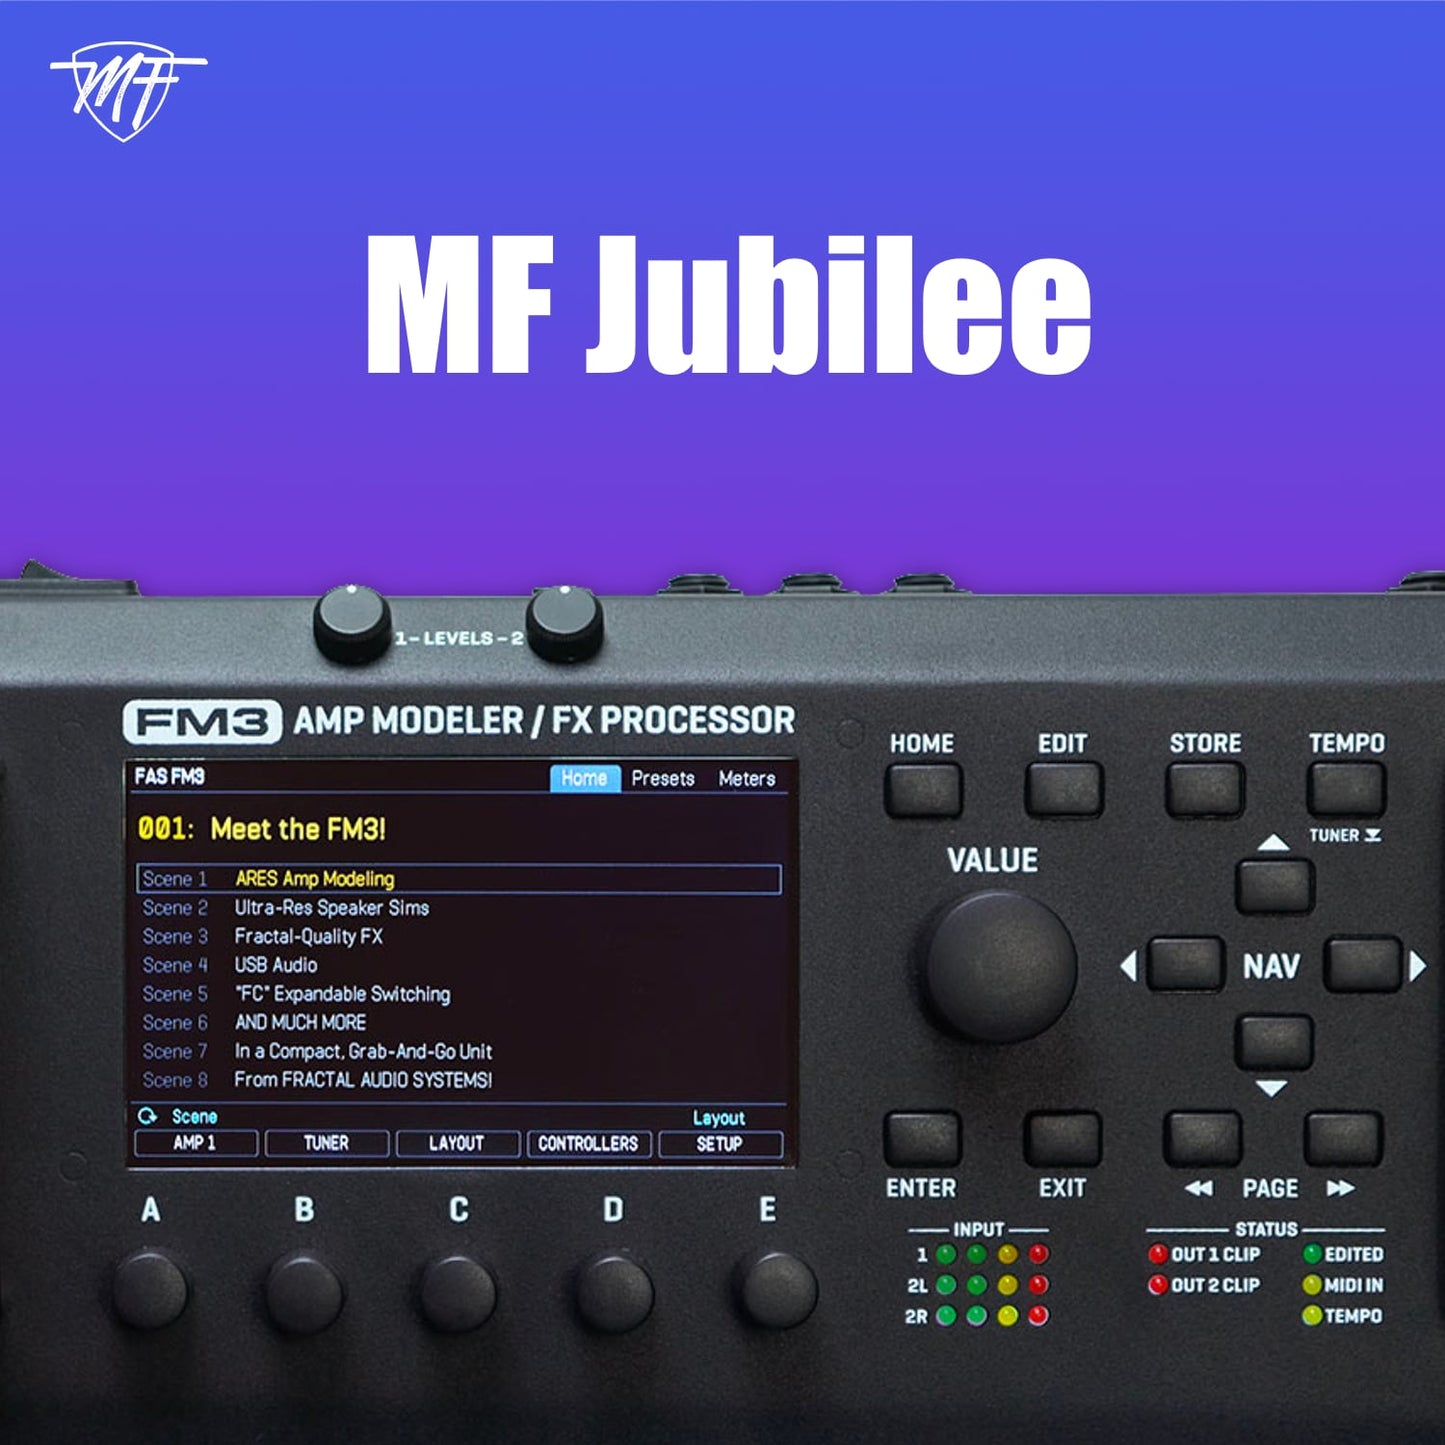 MF Jubilee FM3